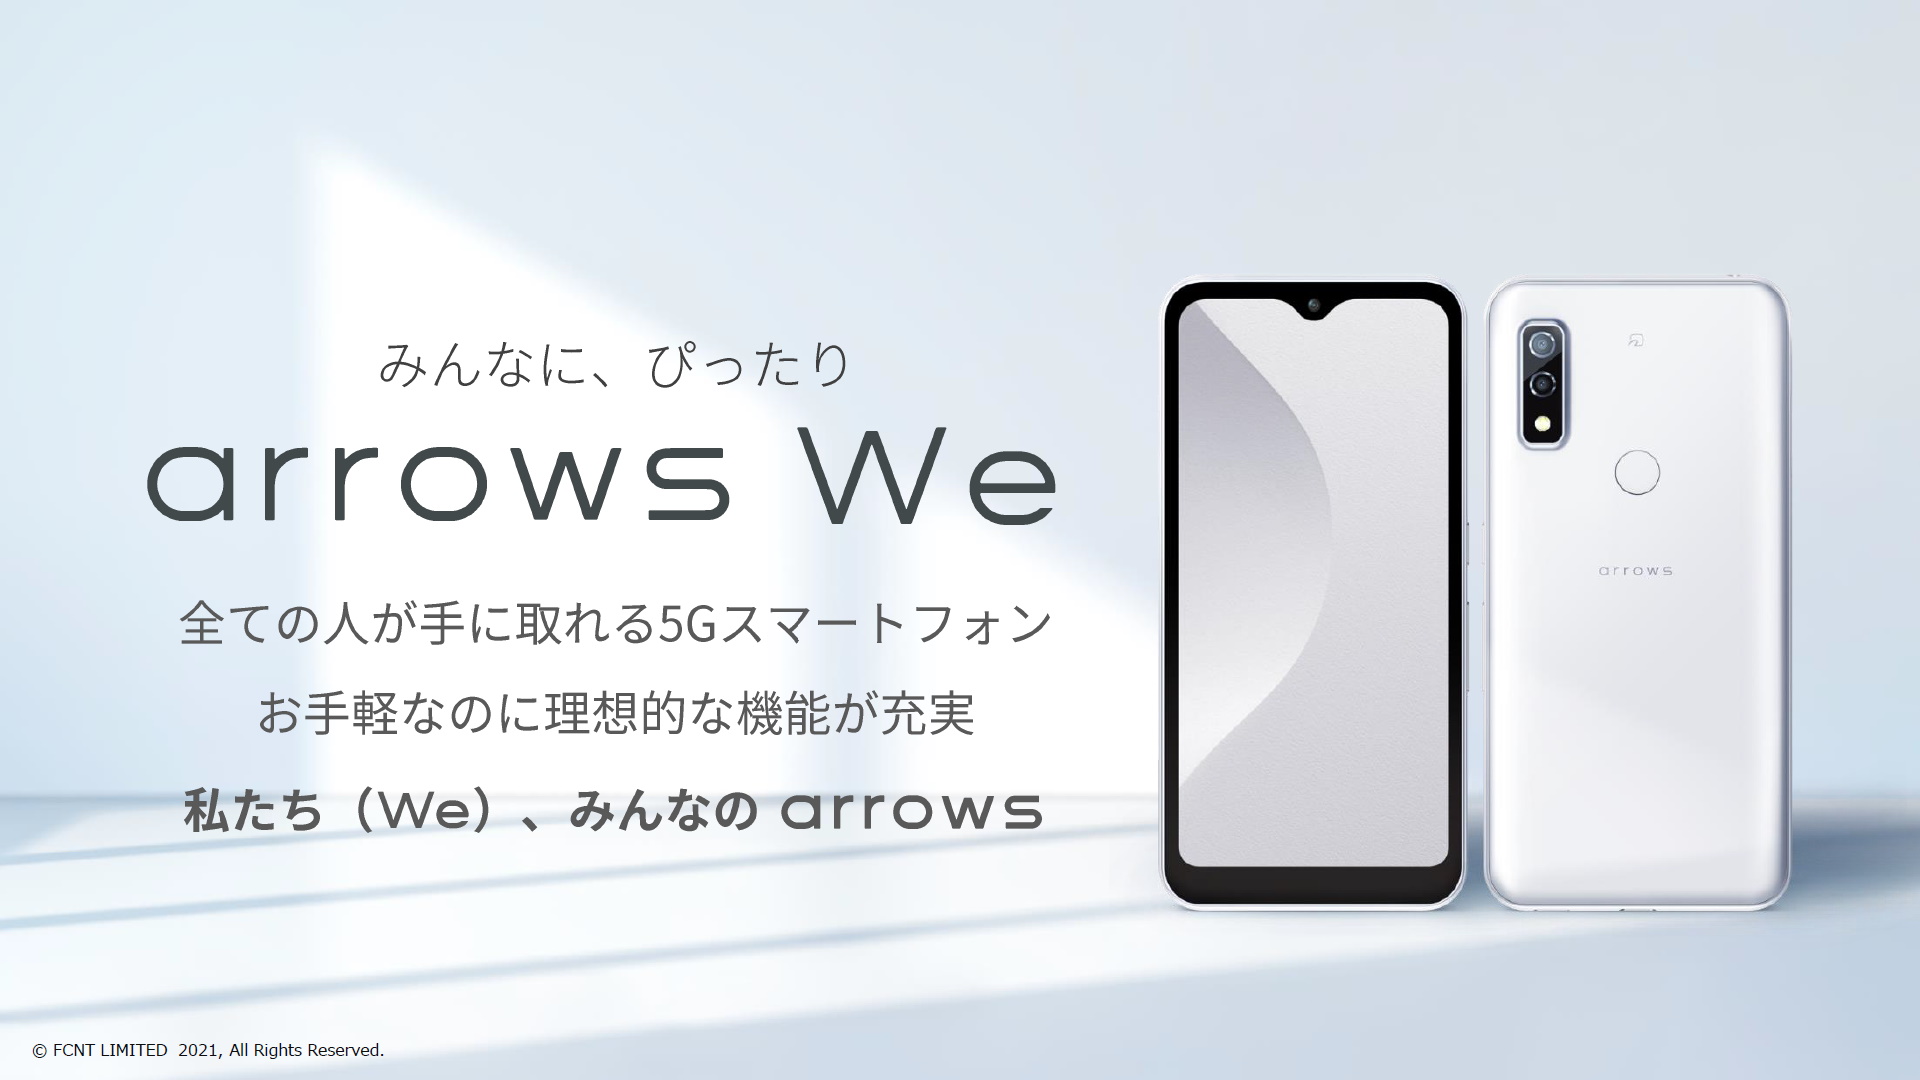 保証1年 arrows We Softbank販売モデル ブラック スマートフォン本体